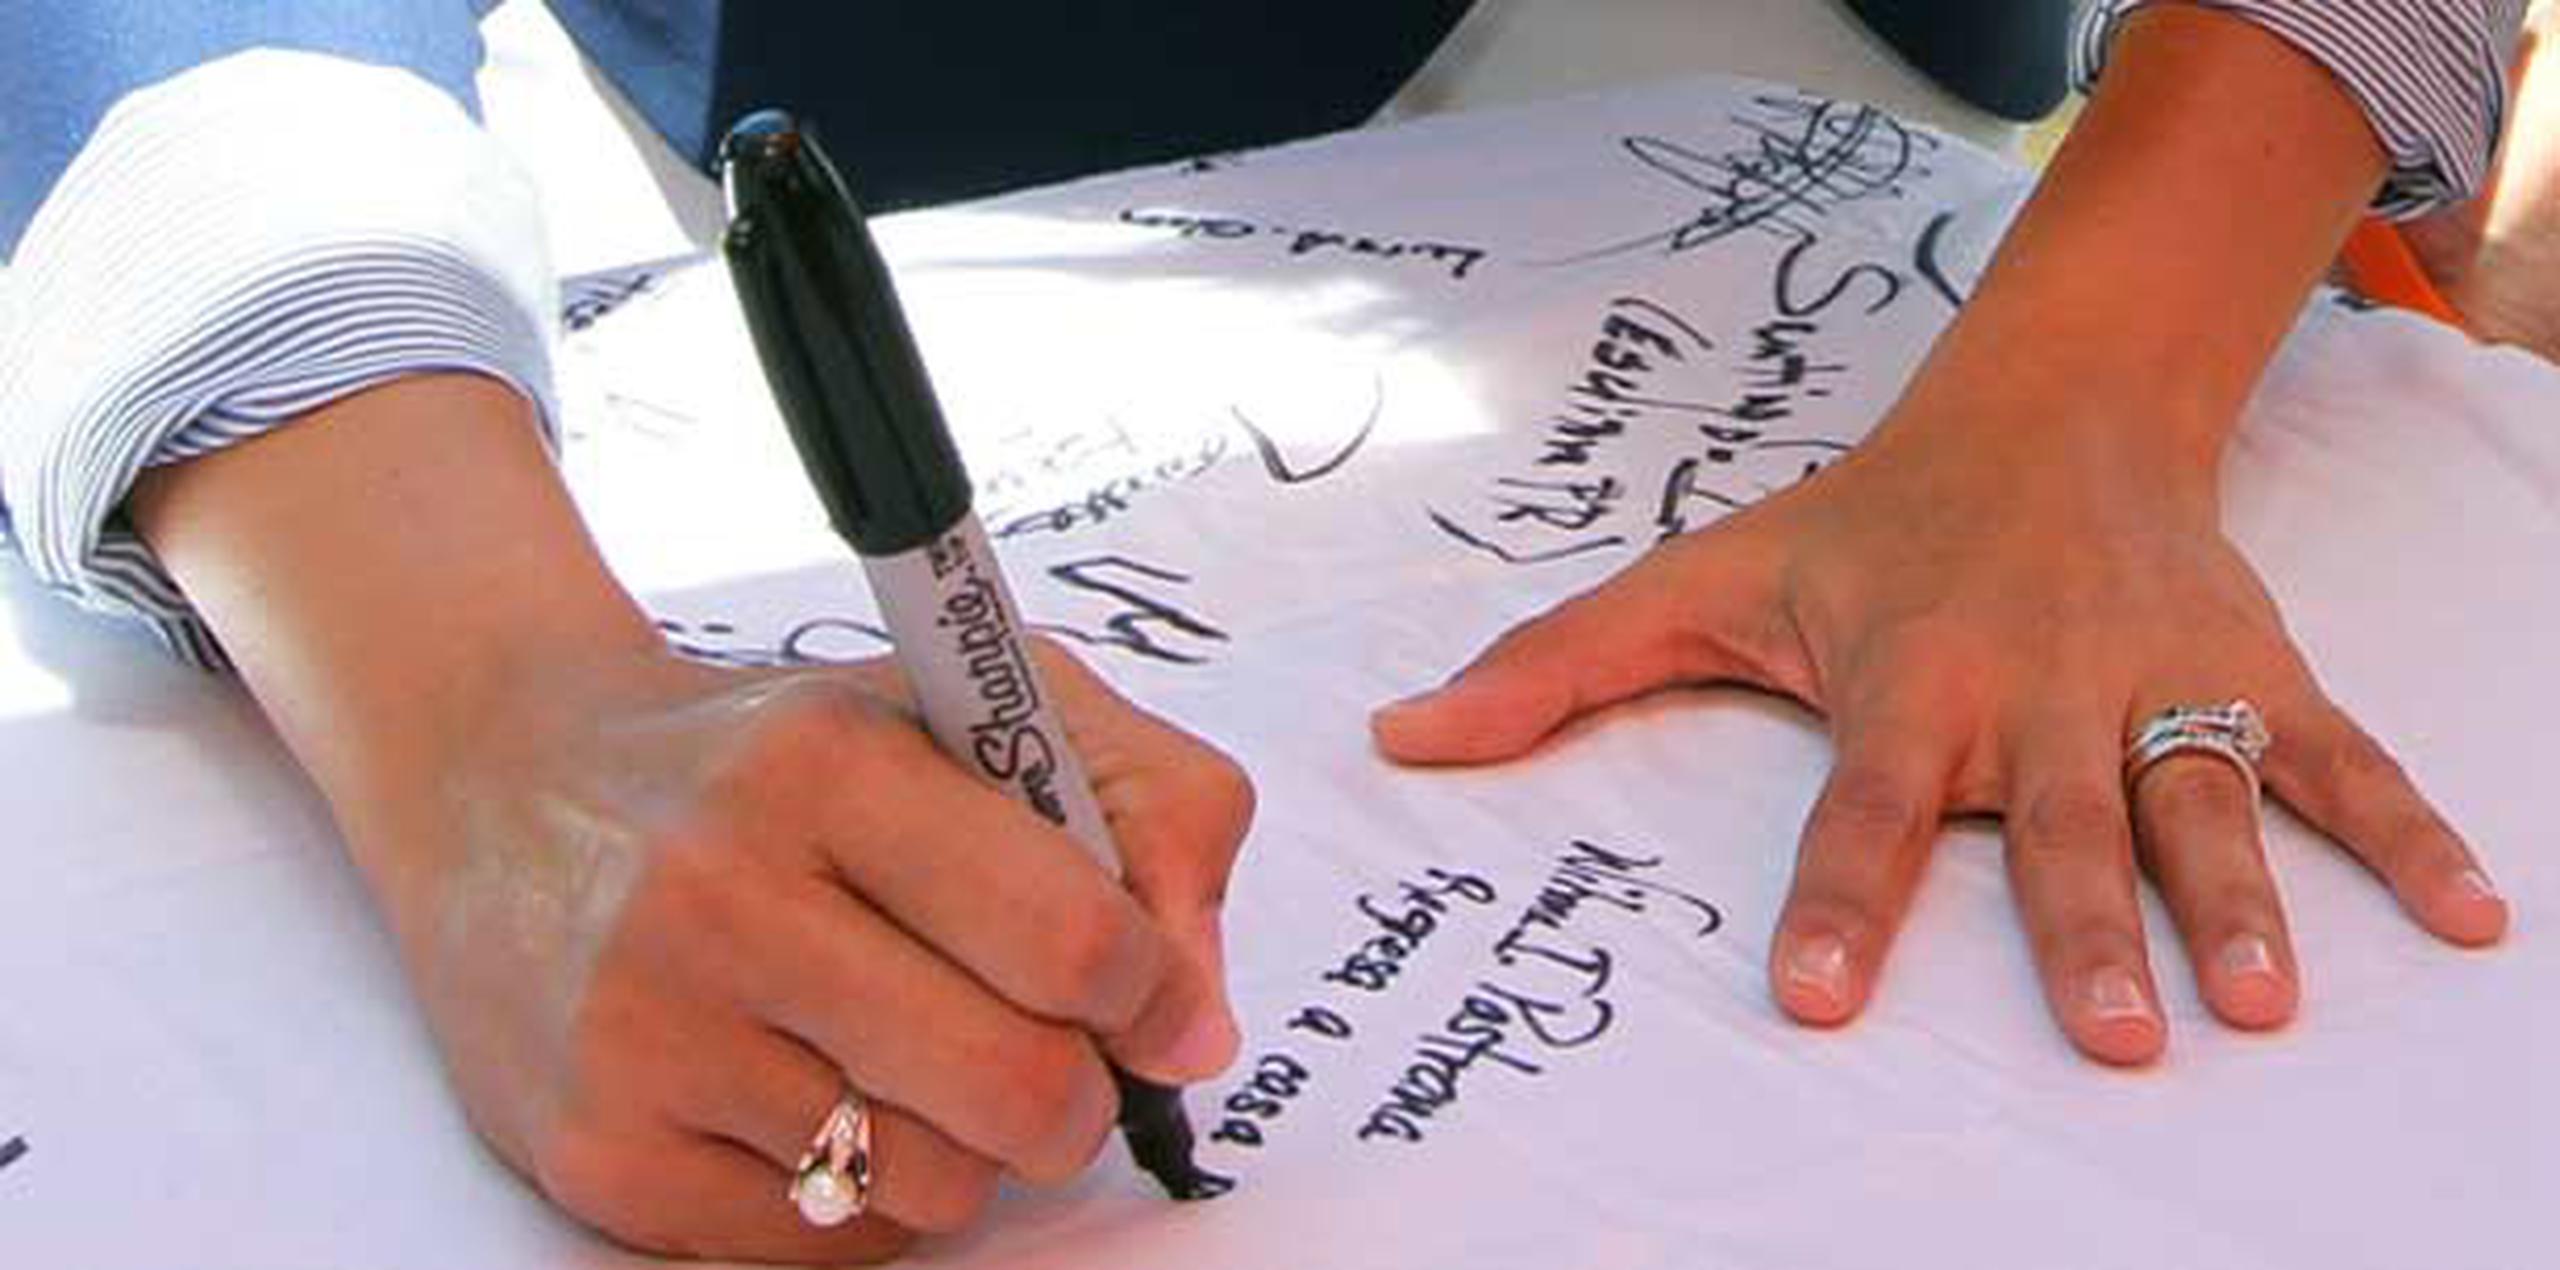 La imagen muestra una de las instancias en las que Pastrana Jiménez plasmó su firma solicitando el regreso a la isla del prisionero político junto al mensaje que lee "Regresa a casa pronto". (Facebook)